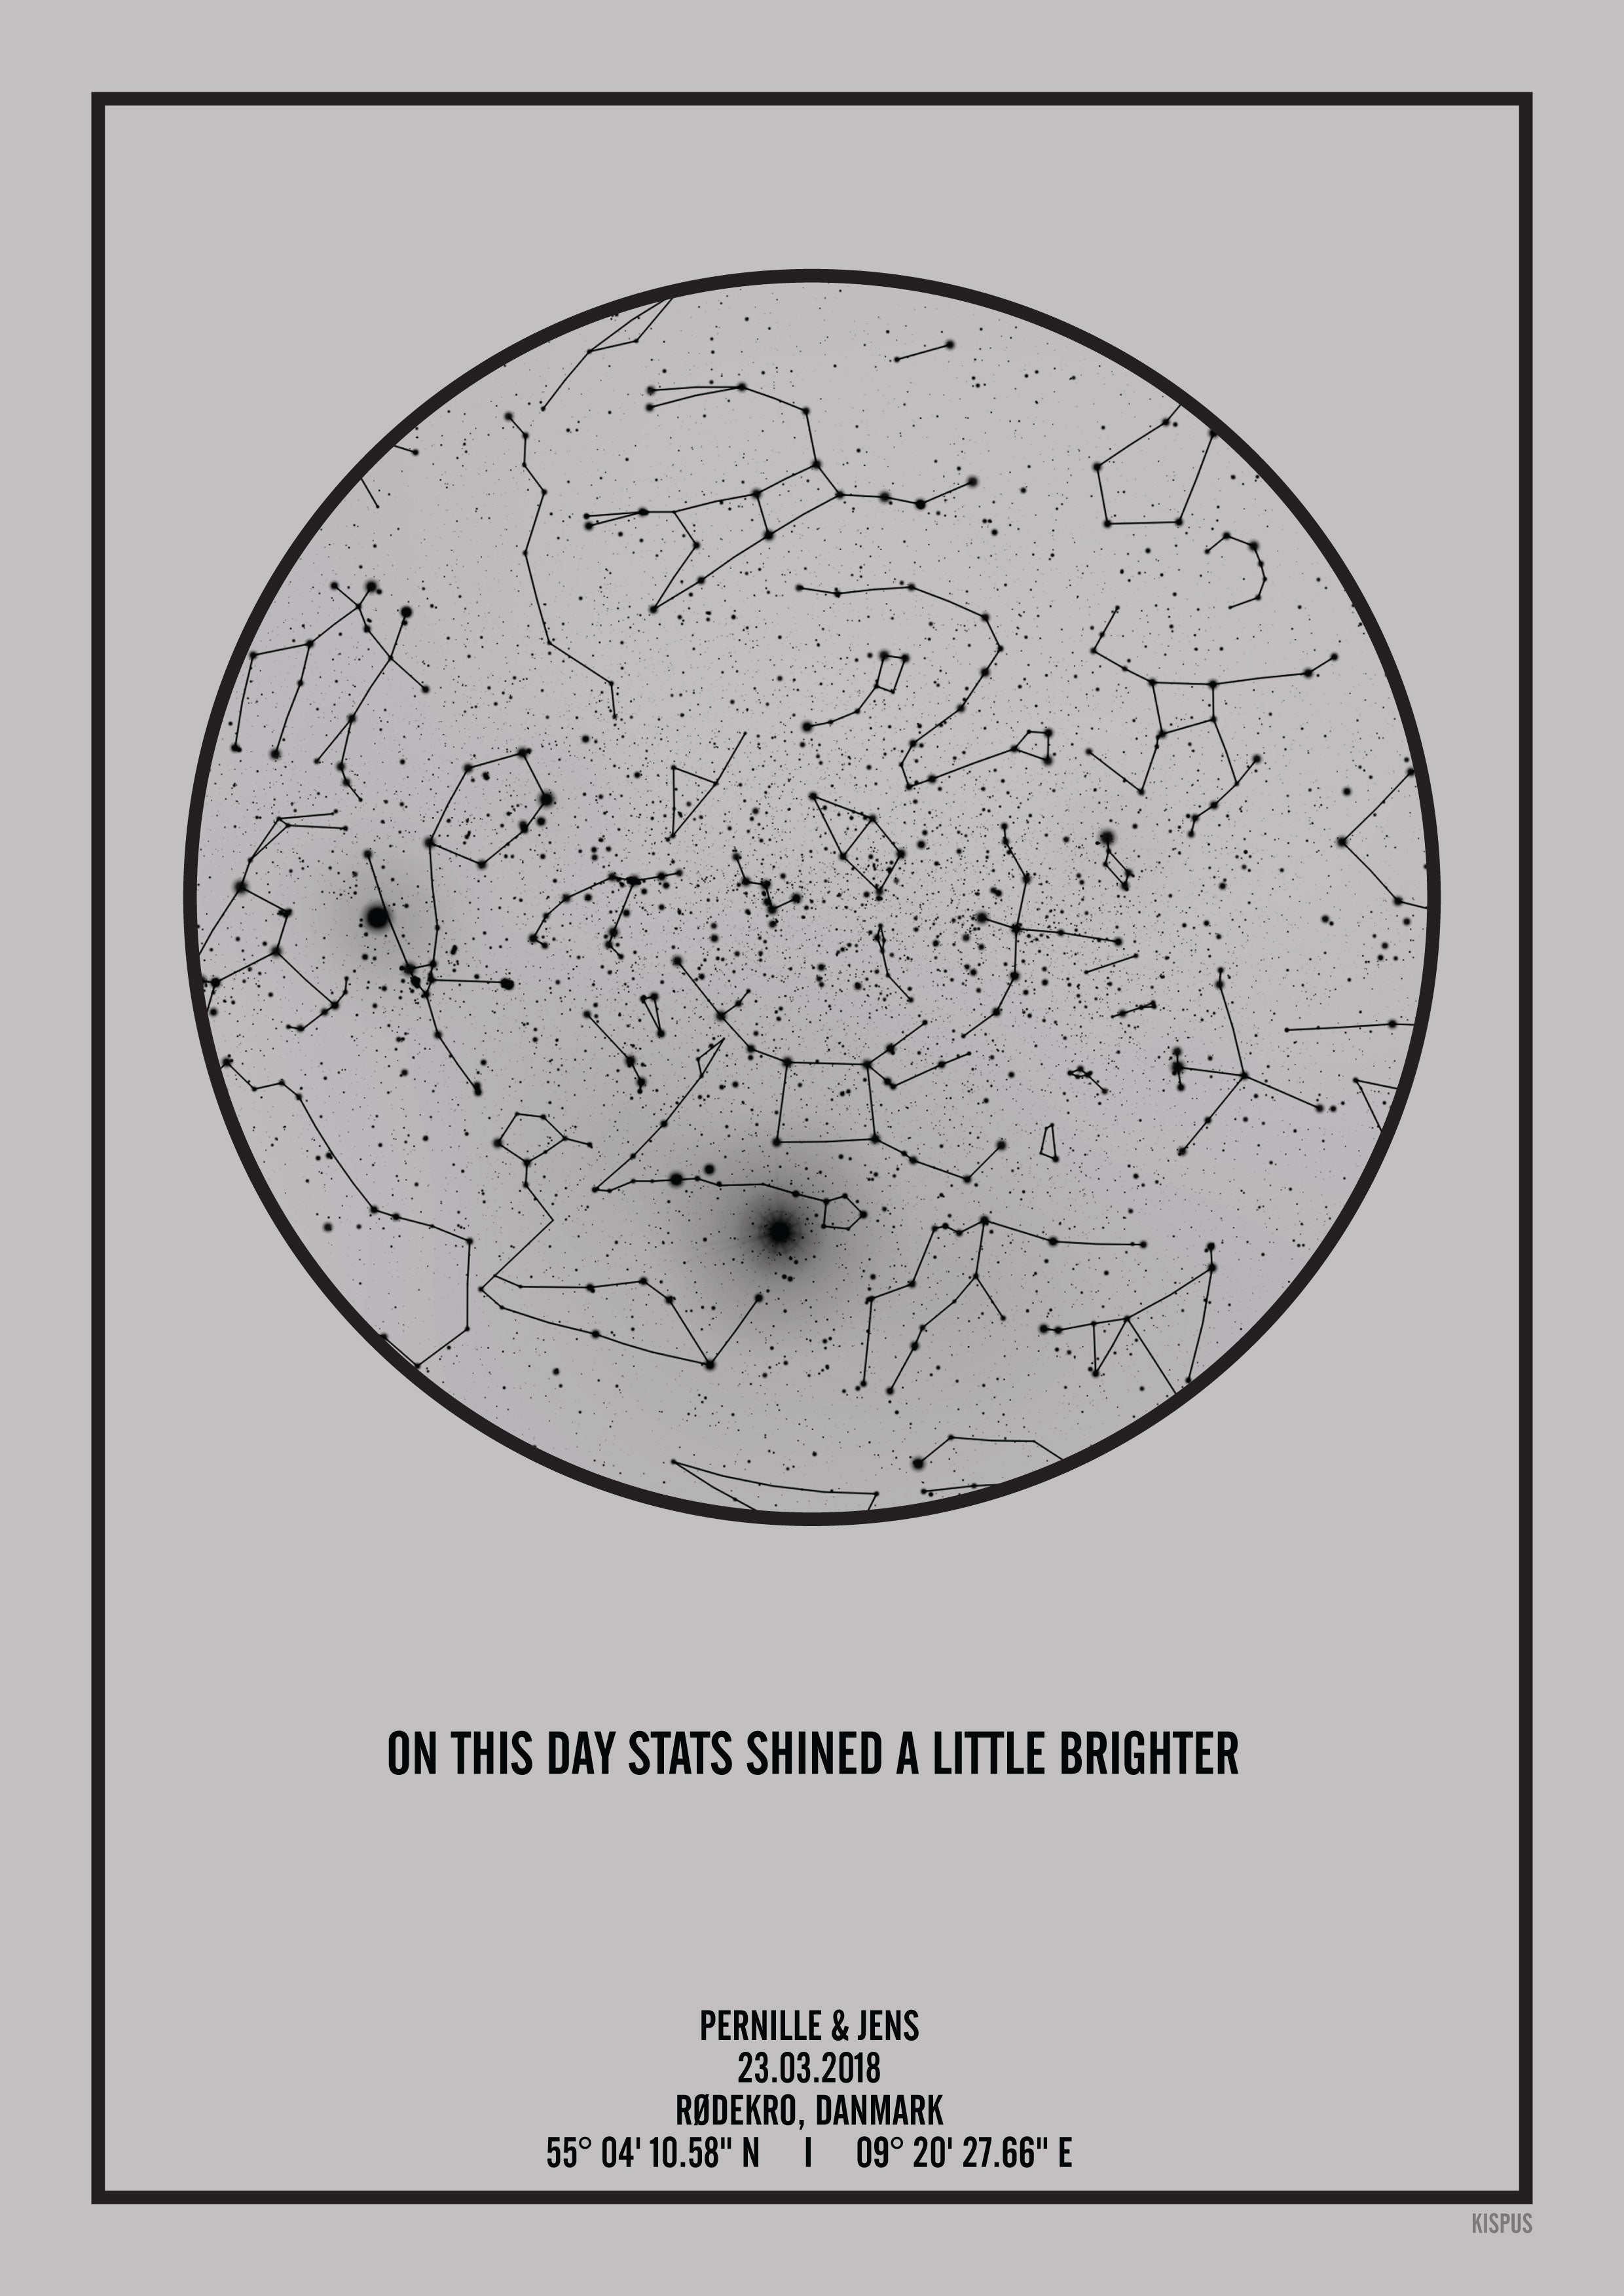 Se PERSONLIG STJERNEHIMMEL PLAKAT (LYSEGRÅ) - 50x70 / Sort tekst + grå stjernehimmel / Stjernehimmel med Stjernebilleder hos KISPUS